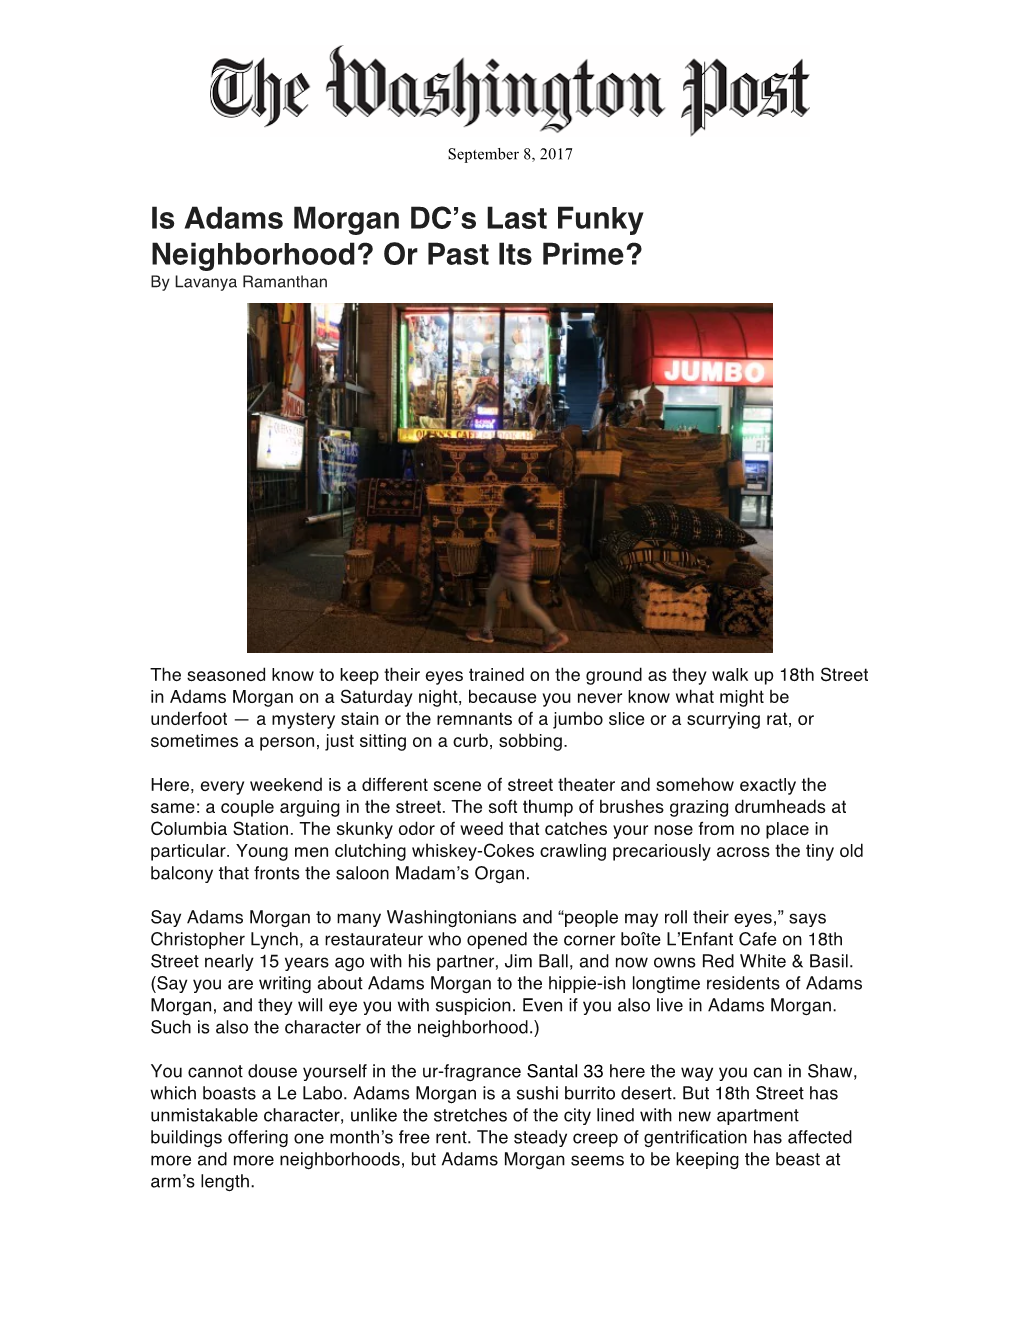 Is Adams Morgan DC's Last Funky Neighborhood?